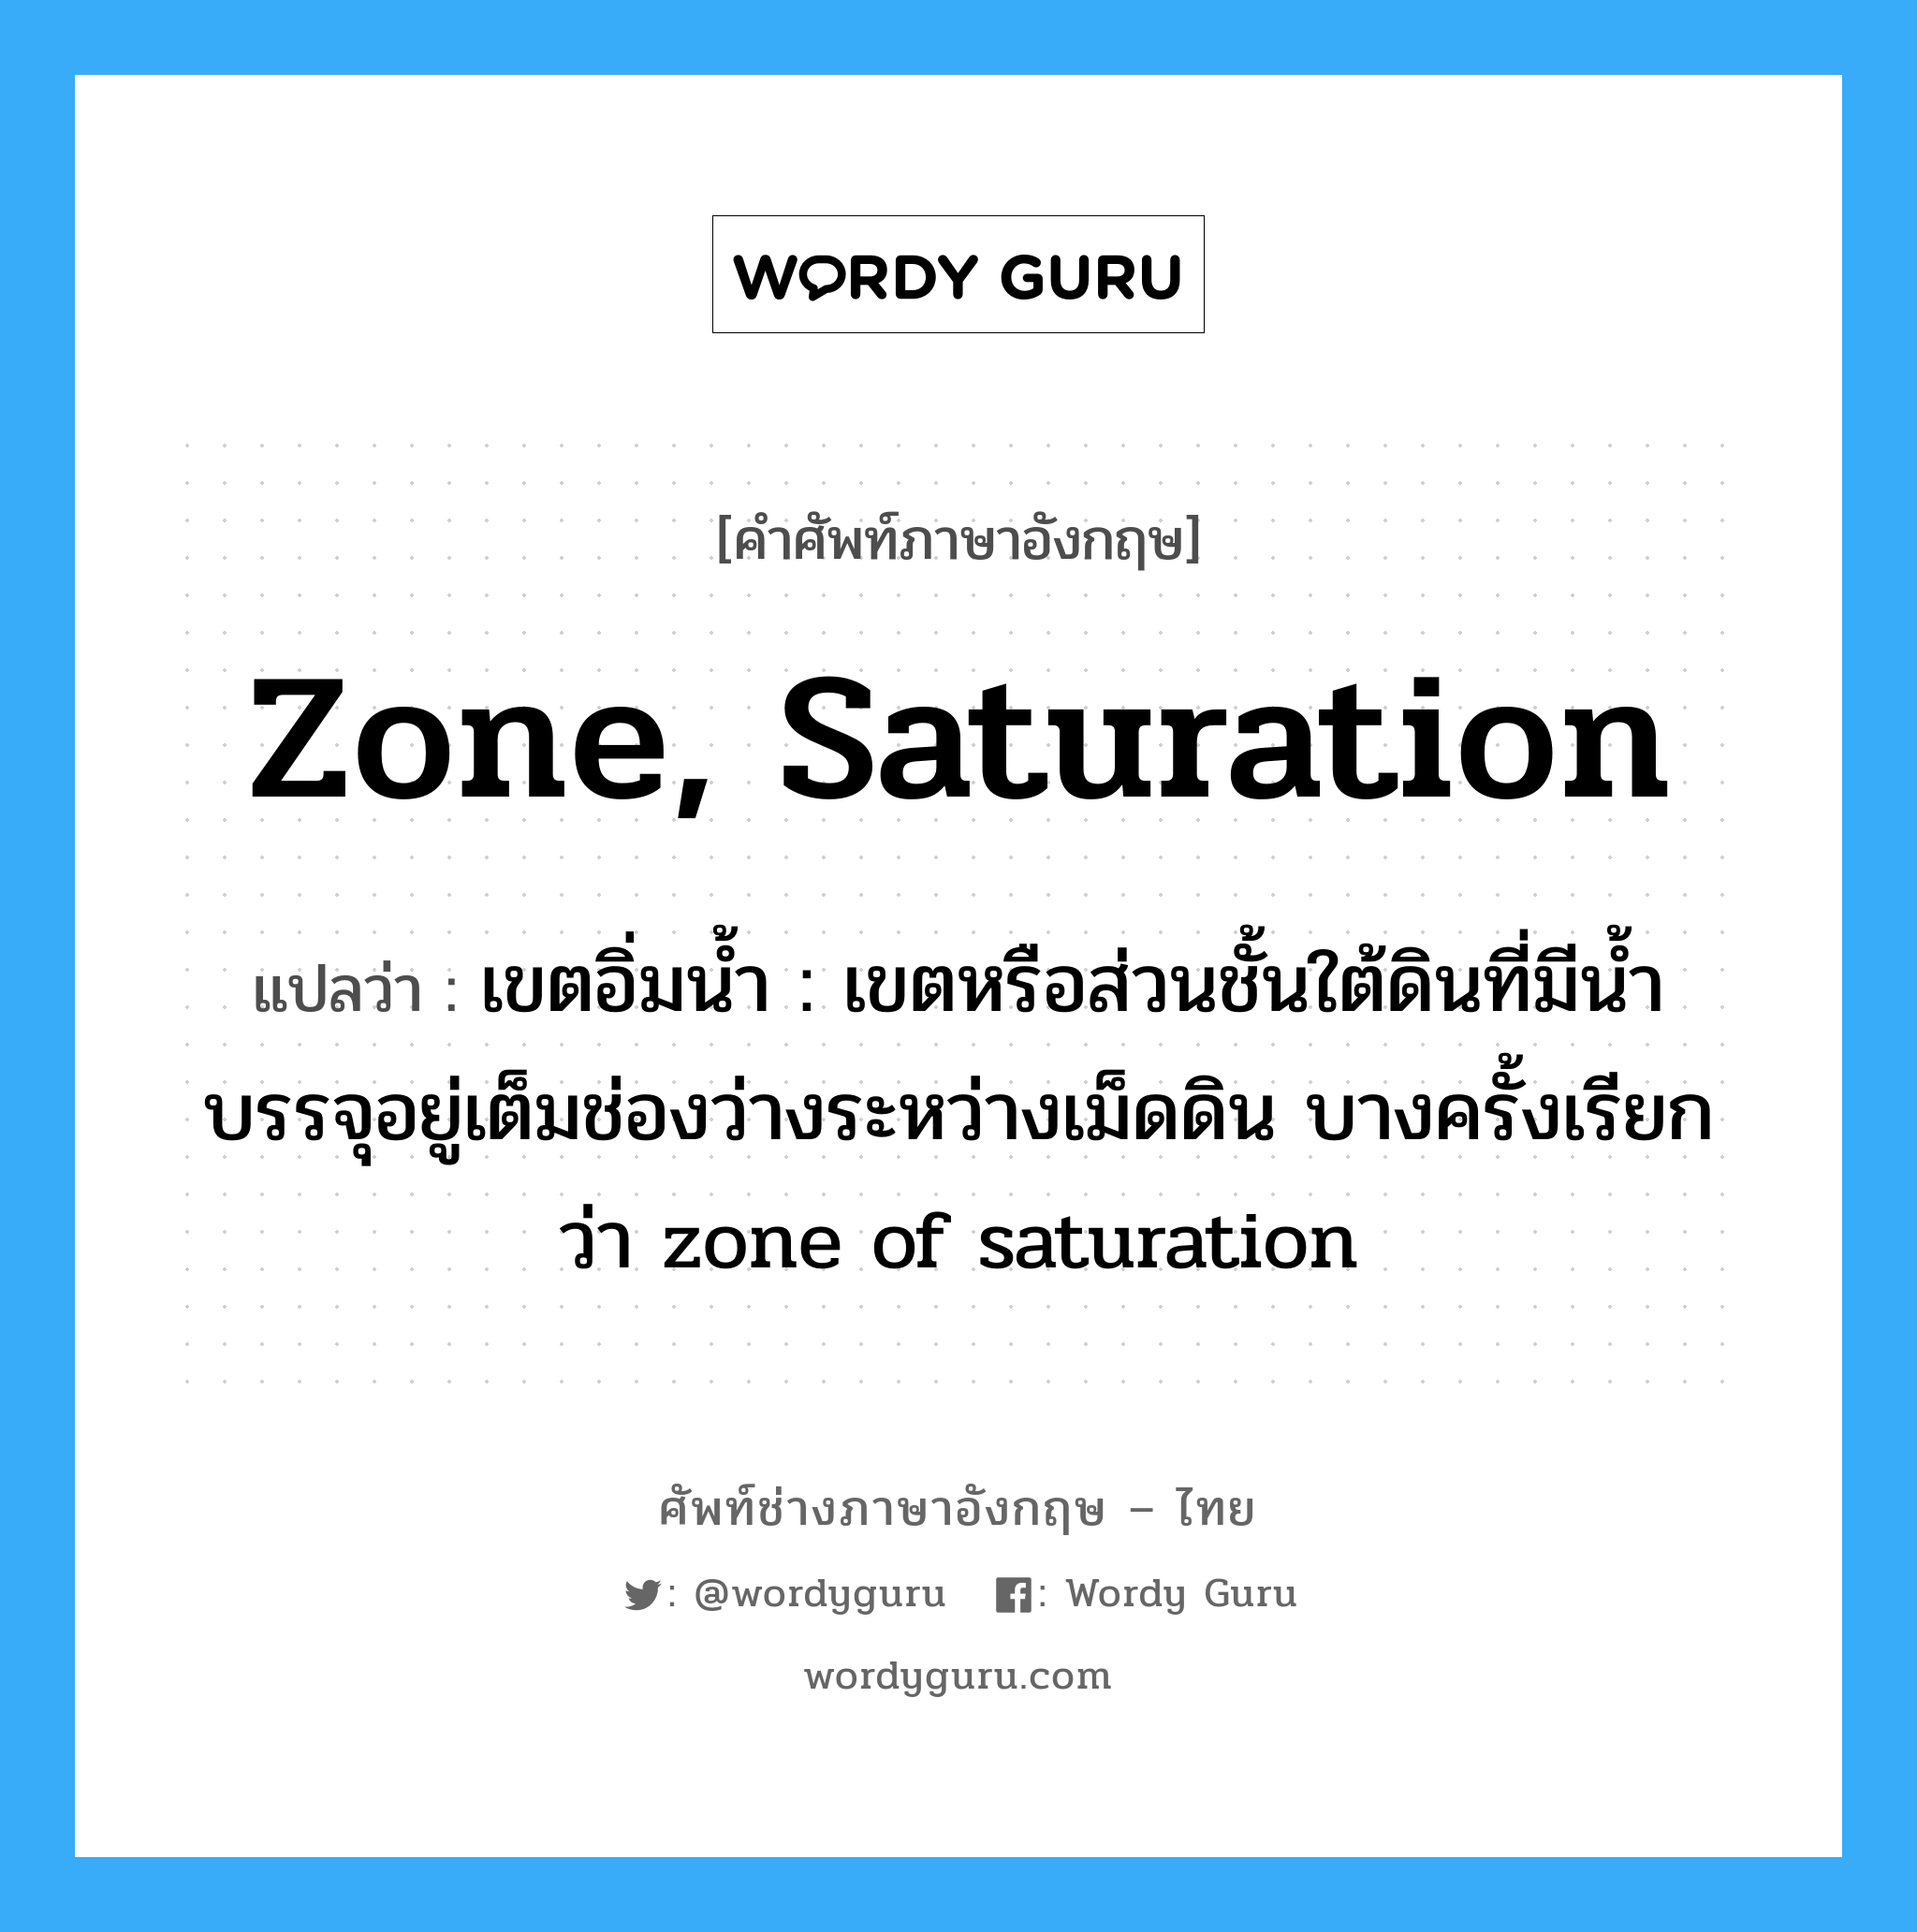 zone, saturation แปลว่า?, คำศัพท์ช่างภาษาอังกฤษ - ไทย zone, saturation คำศัพท์ภาษาอังกฤษ zone, saturation แปลว่า เขตอิ่มน้ำ : เขตหรือส่วนชั้นใต้ดินที่มีน้ำบรรจุอยู่เต็มช่องว่างระหว่างเม็ดดิน บางครั้งเรียกว่า zone of saturation